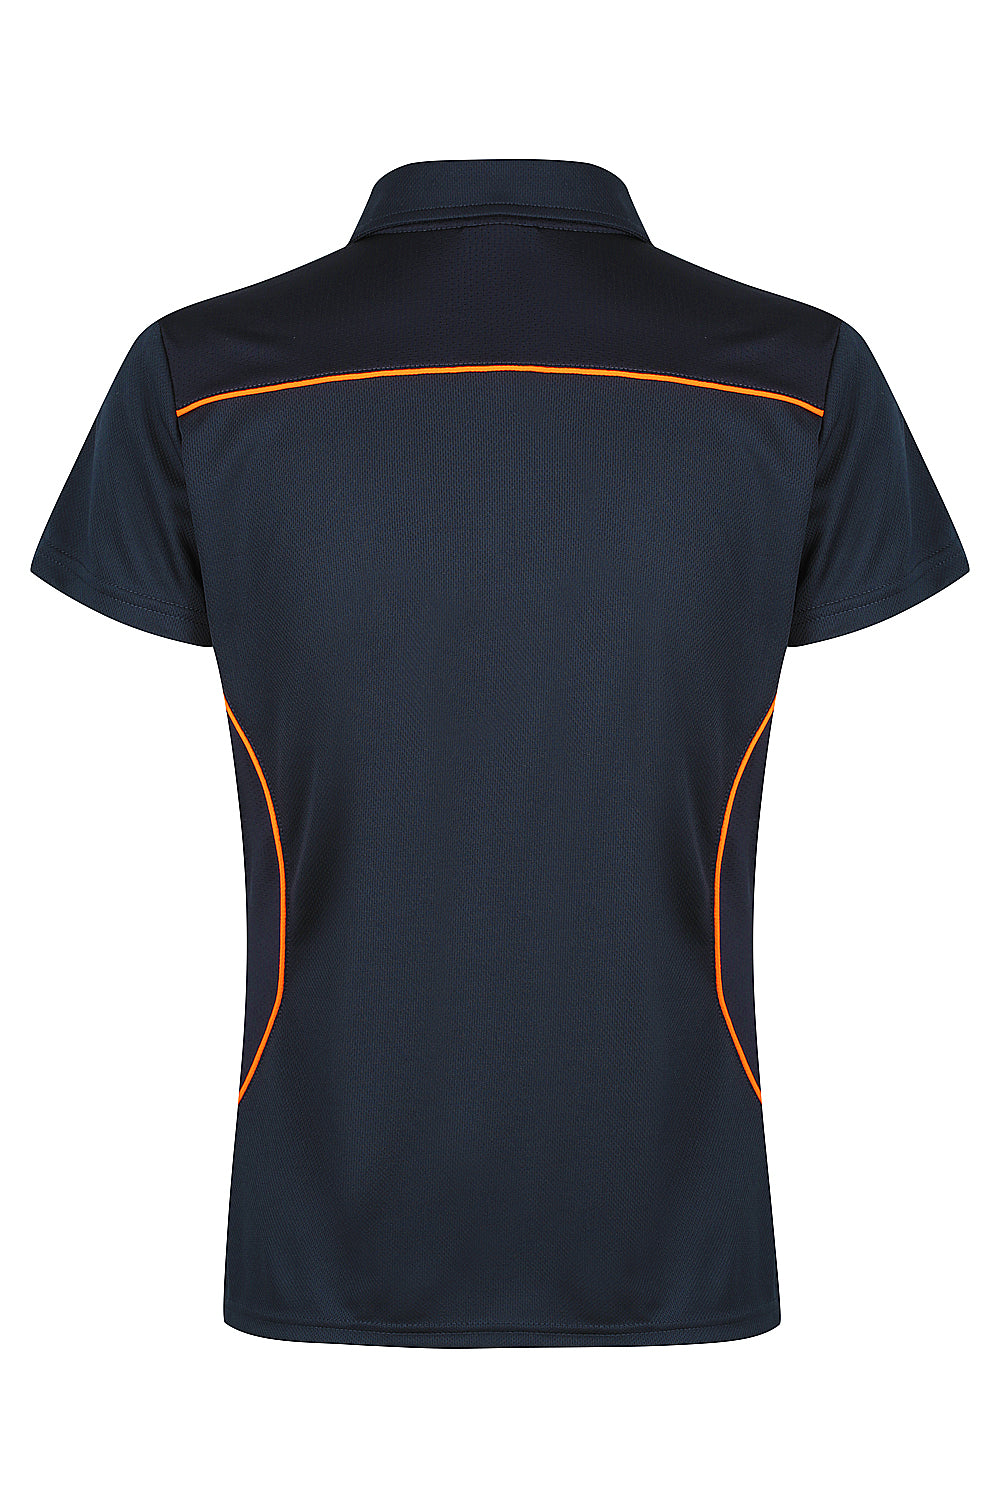 Custom Ladies Kurana Work Shirts - Navy/Fluro Orange back